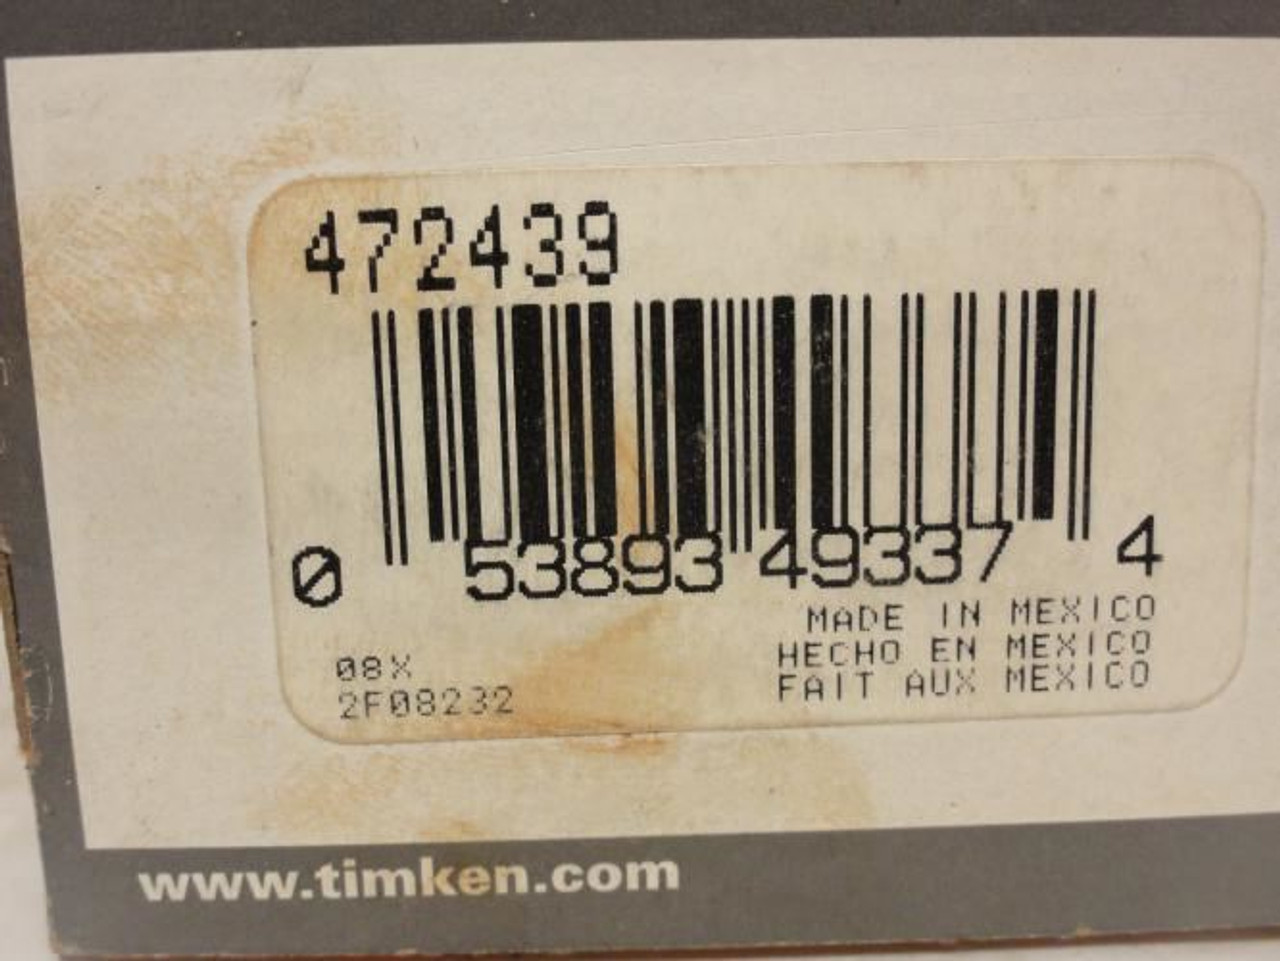 Timken 472439; Oil Seal 1.875"ID x 2.62" OD x 0.312" Wide